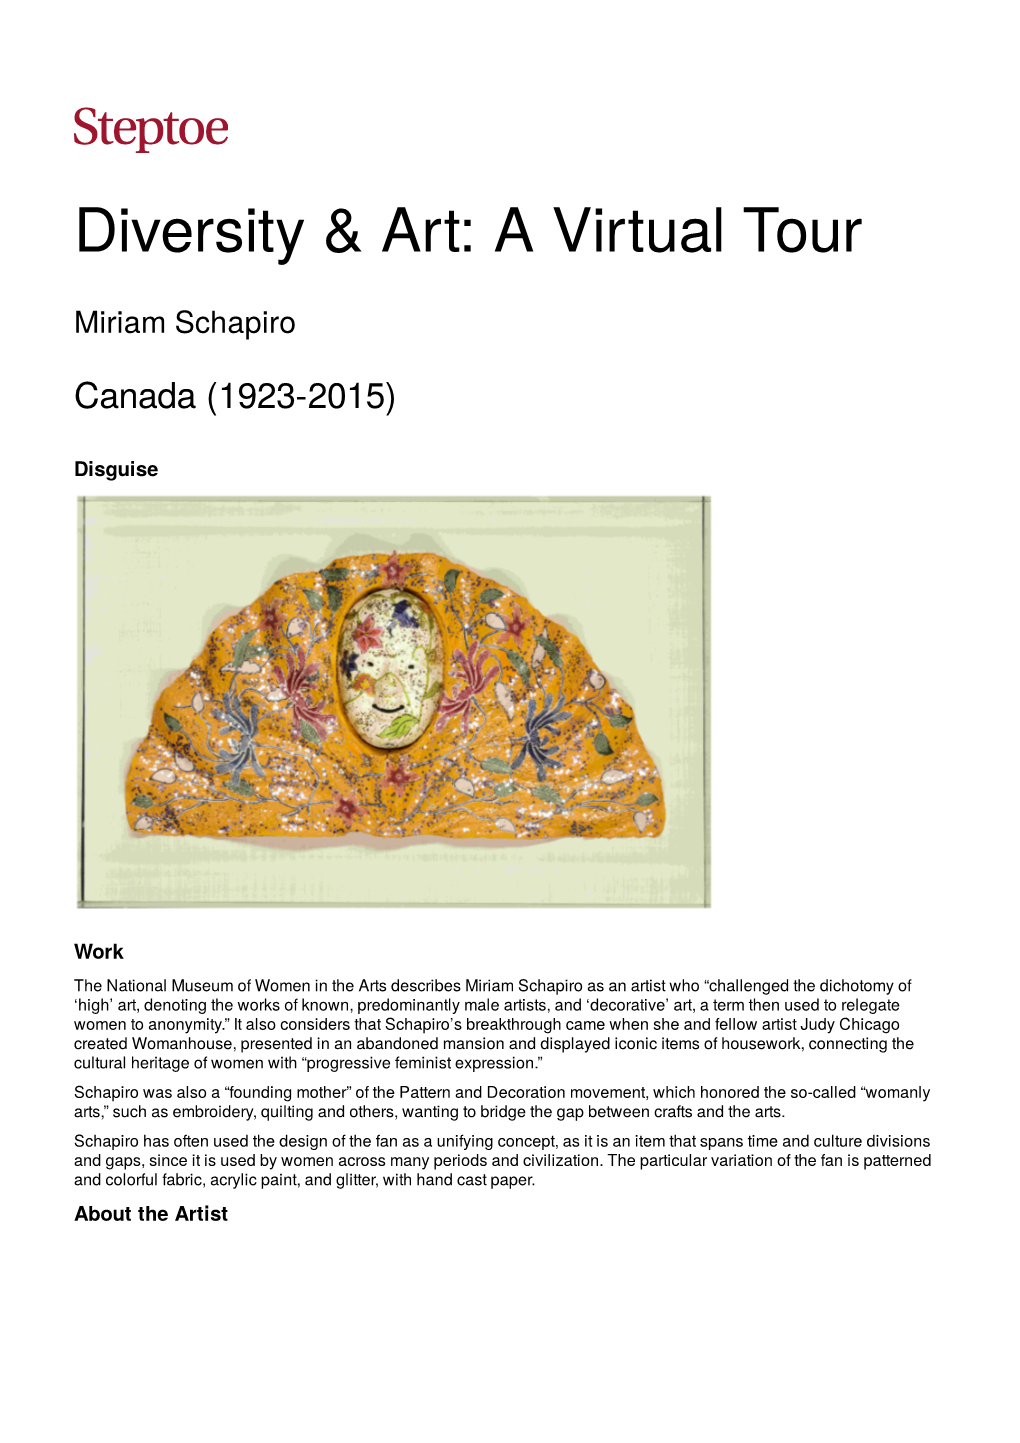 Diversity & Art: a Virtual Tour